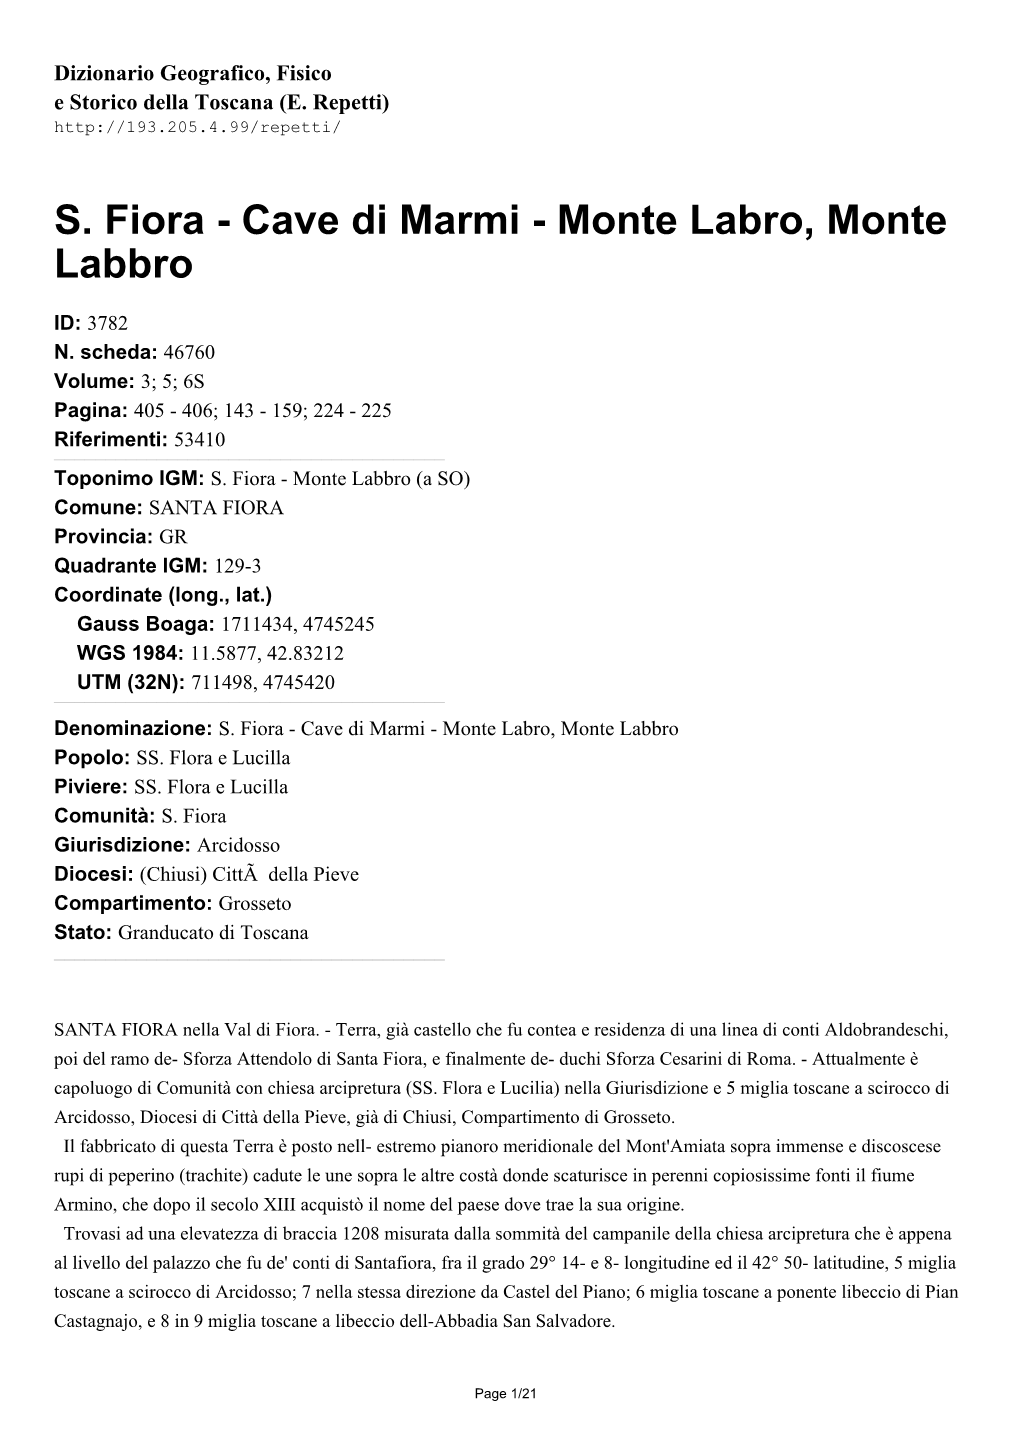 S. Fiora - Cave Di Marmi - Monte Labro, Monte Labbro